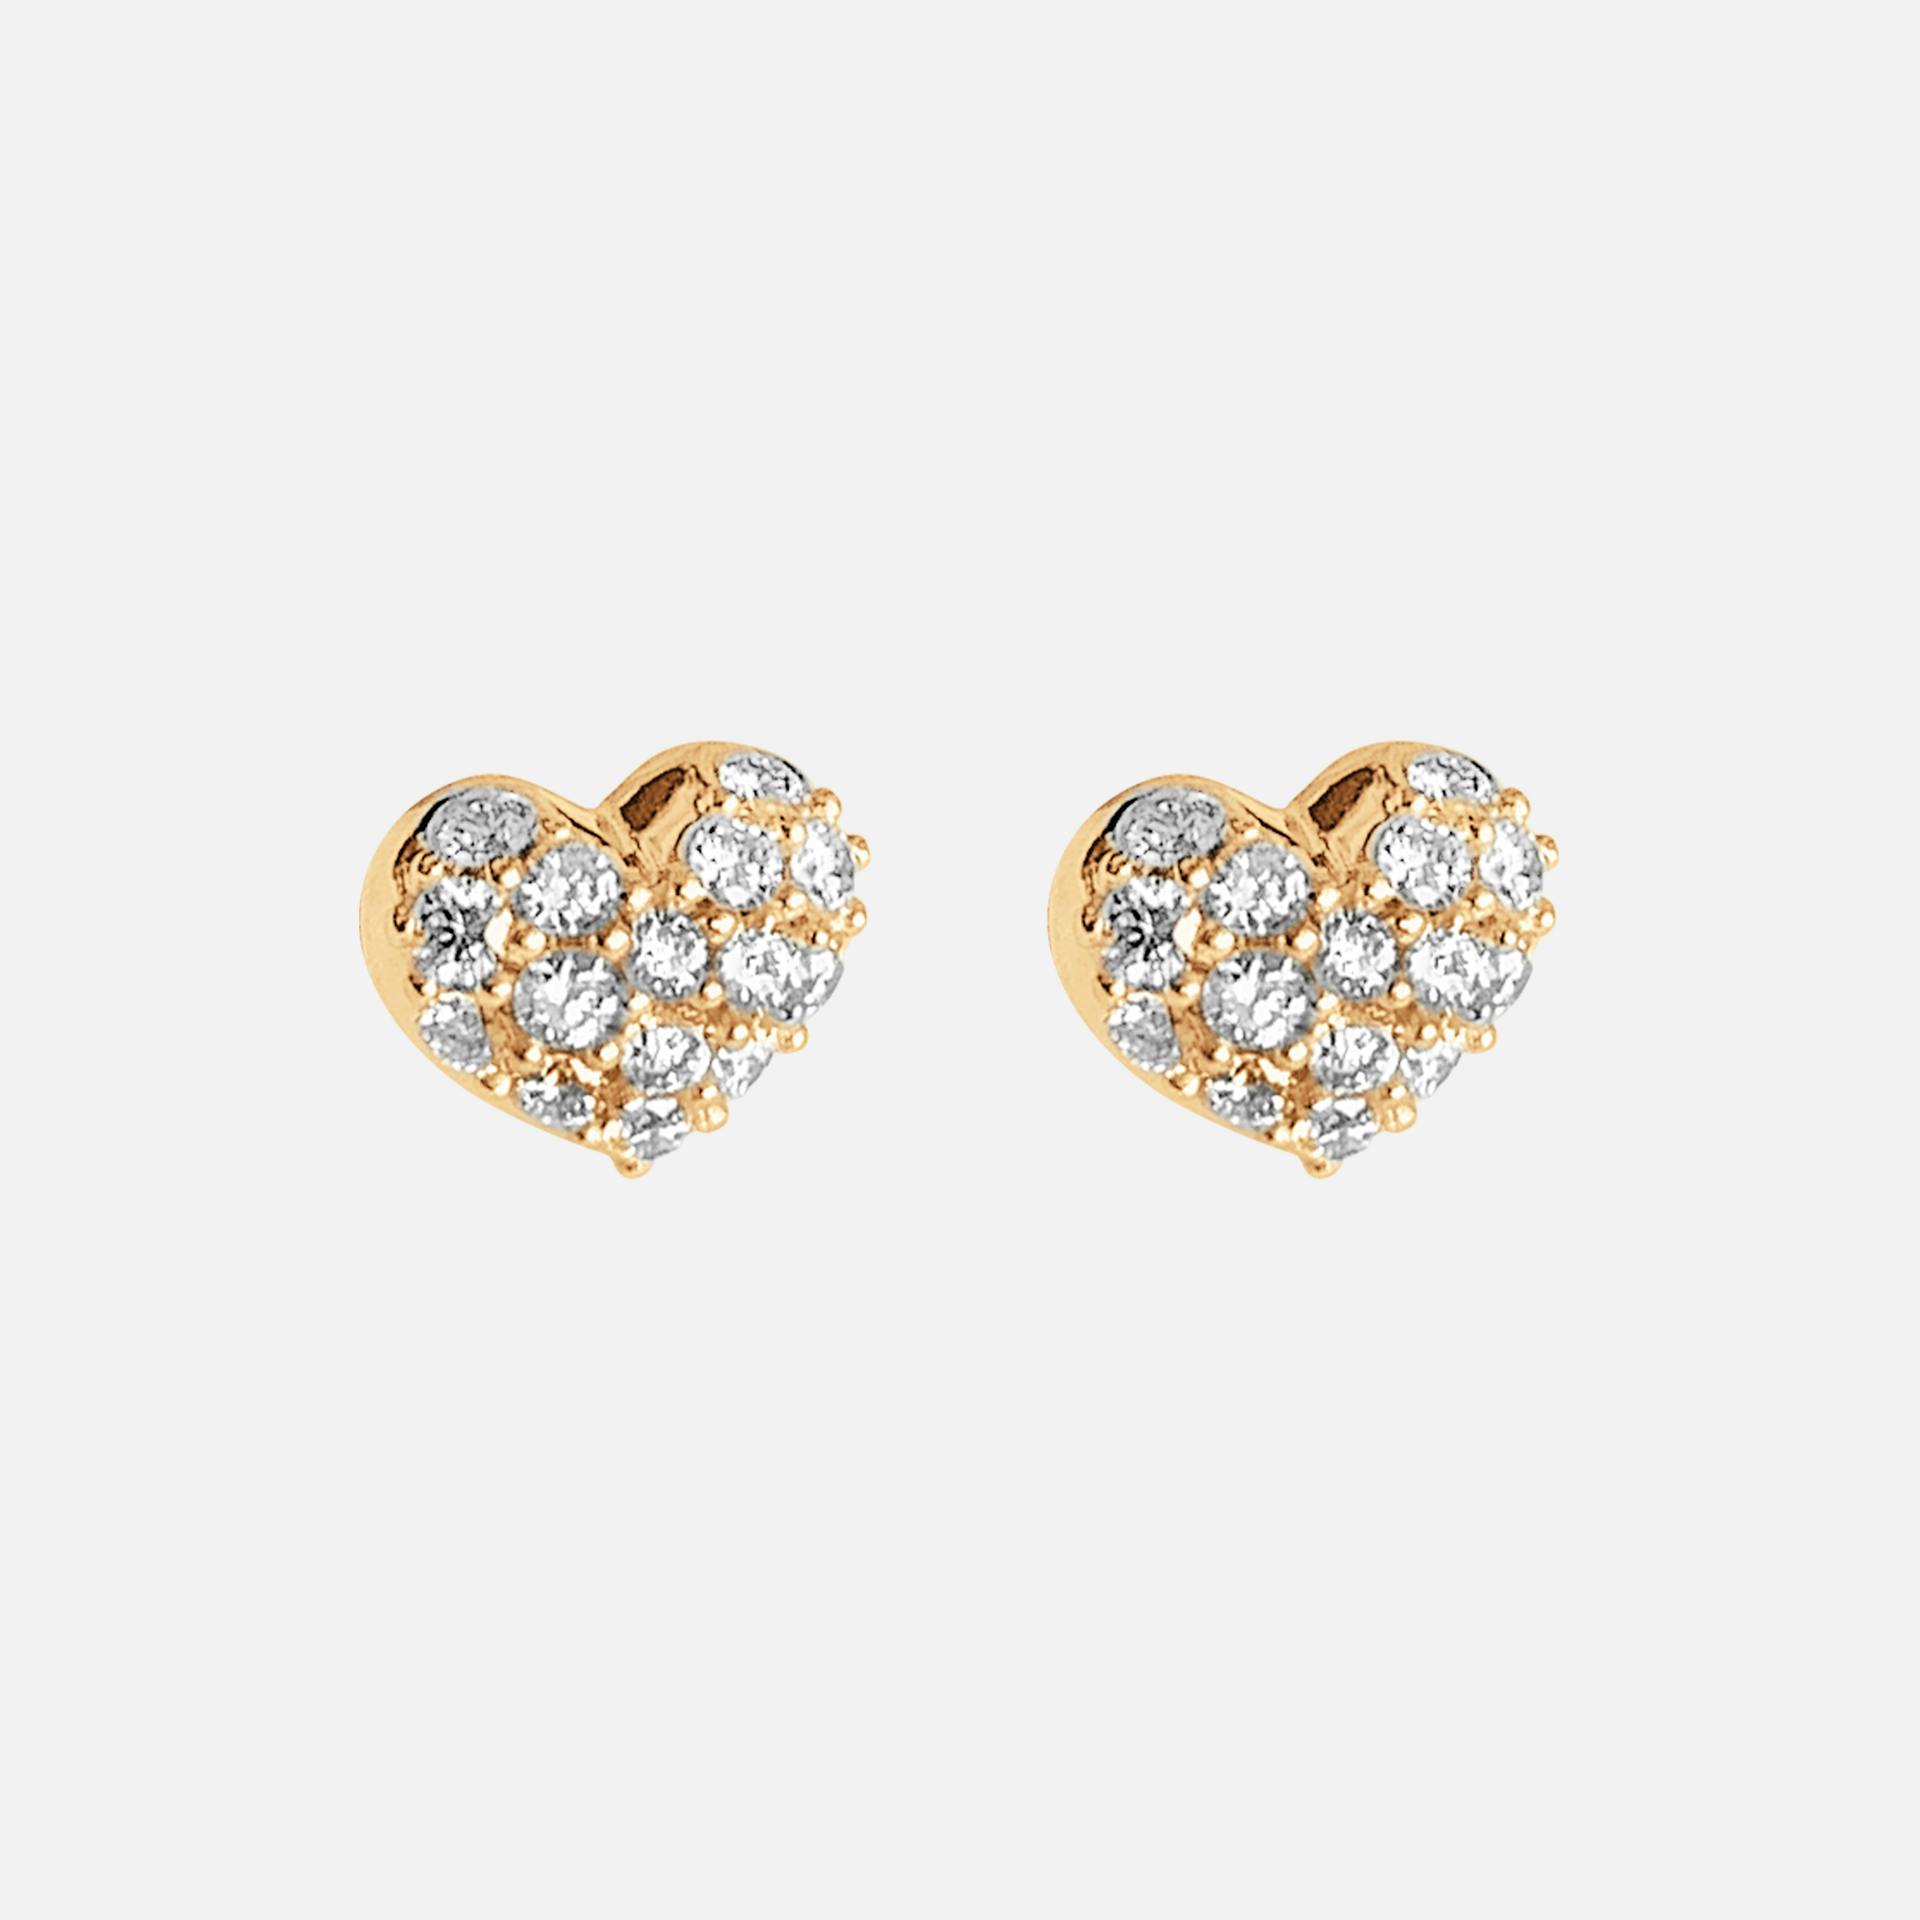 Hearts Pavé Stud Earrings in Yellow Gold with Diamonds  |  Ole Lynggaard Copenhagen 